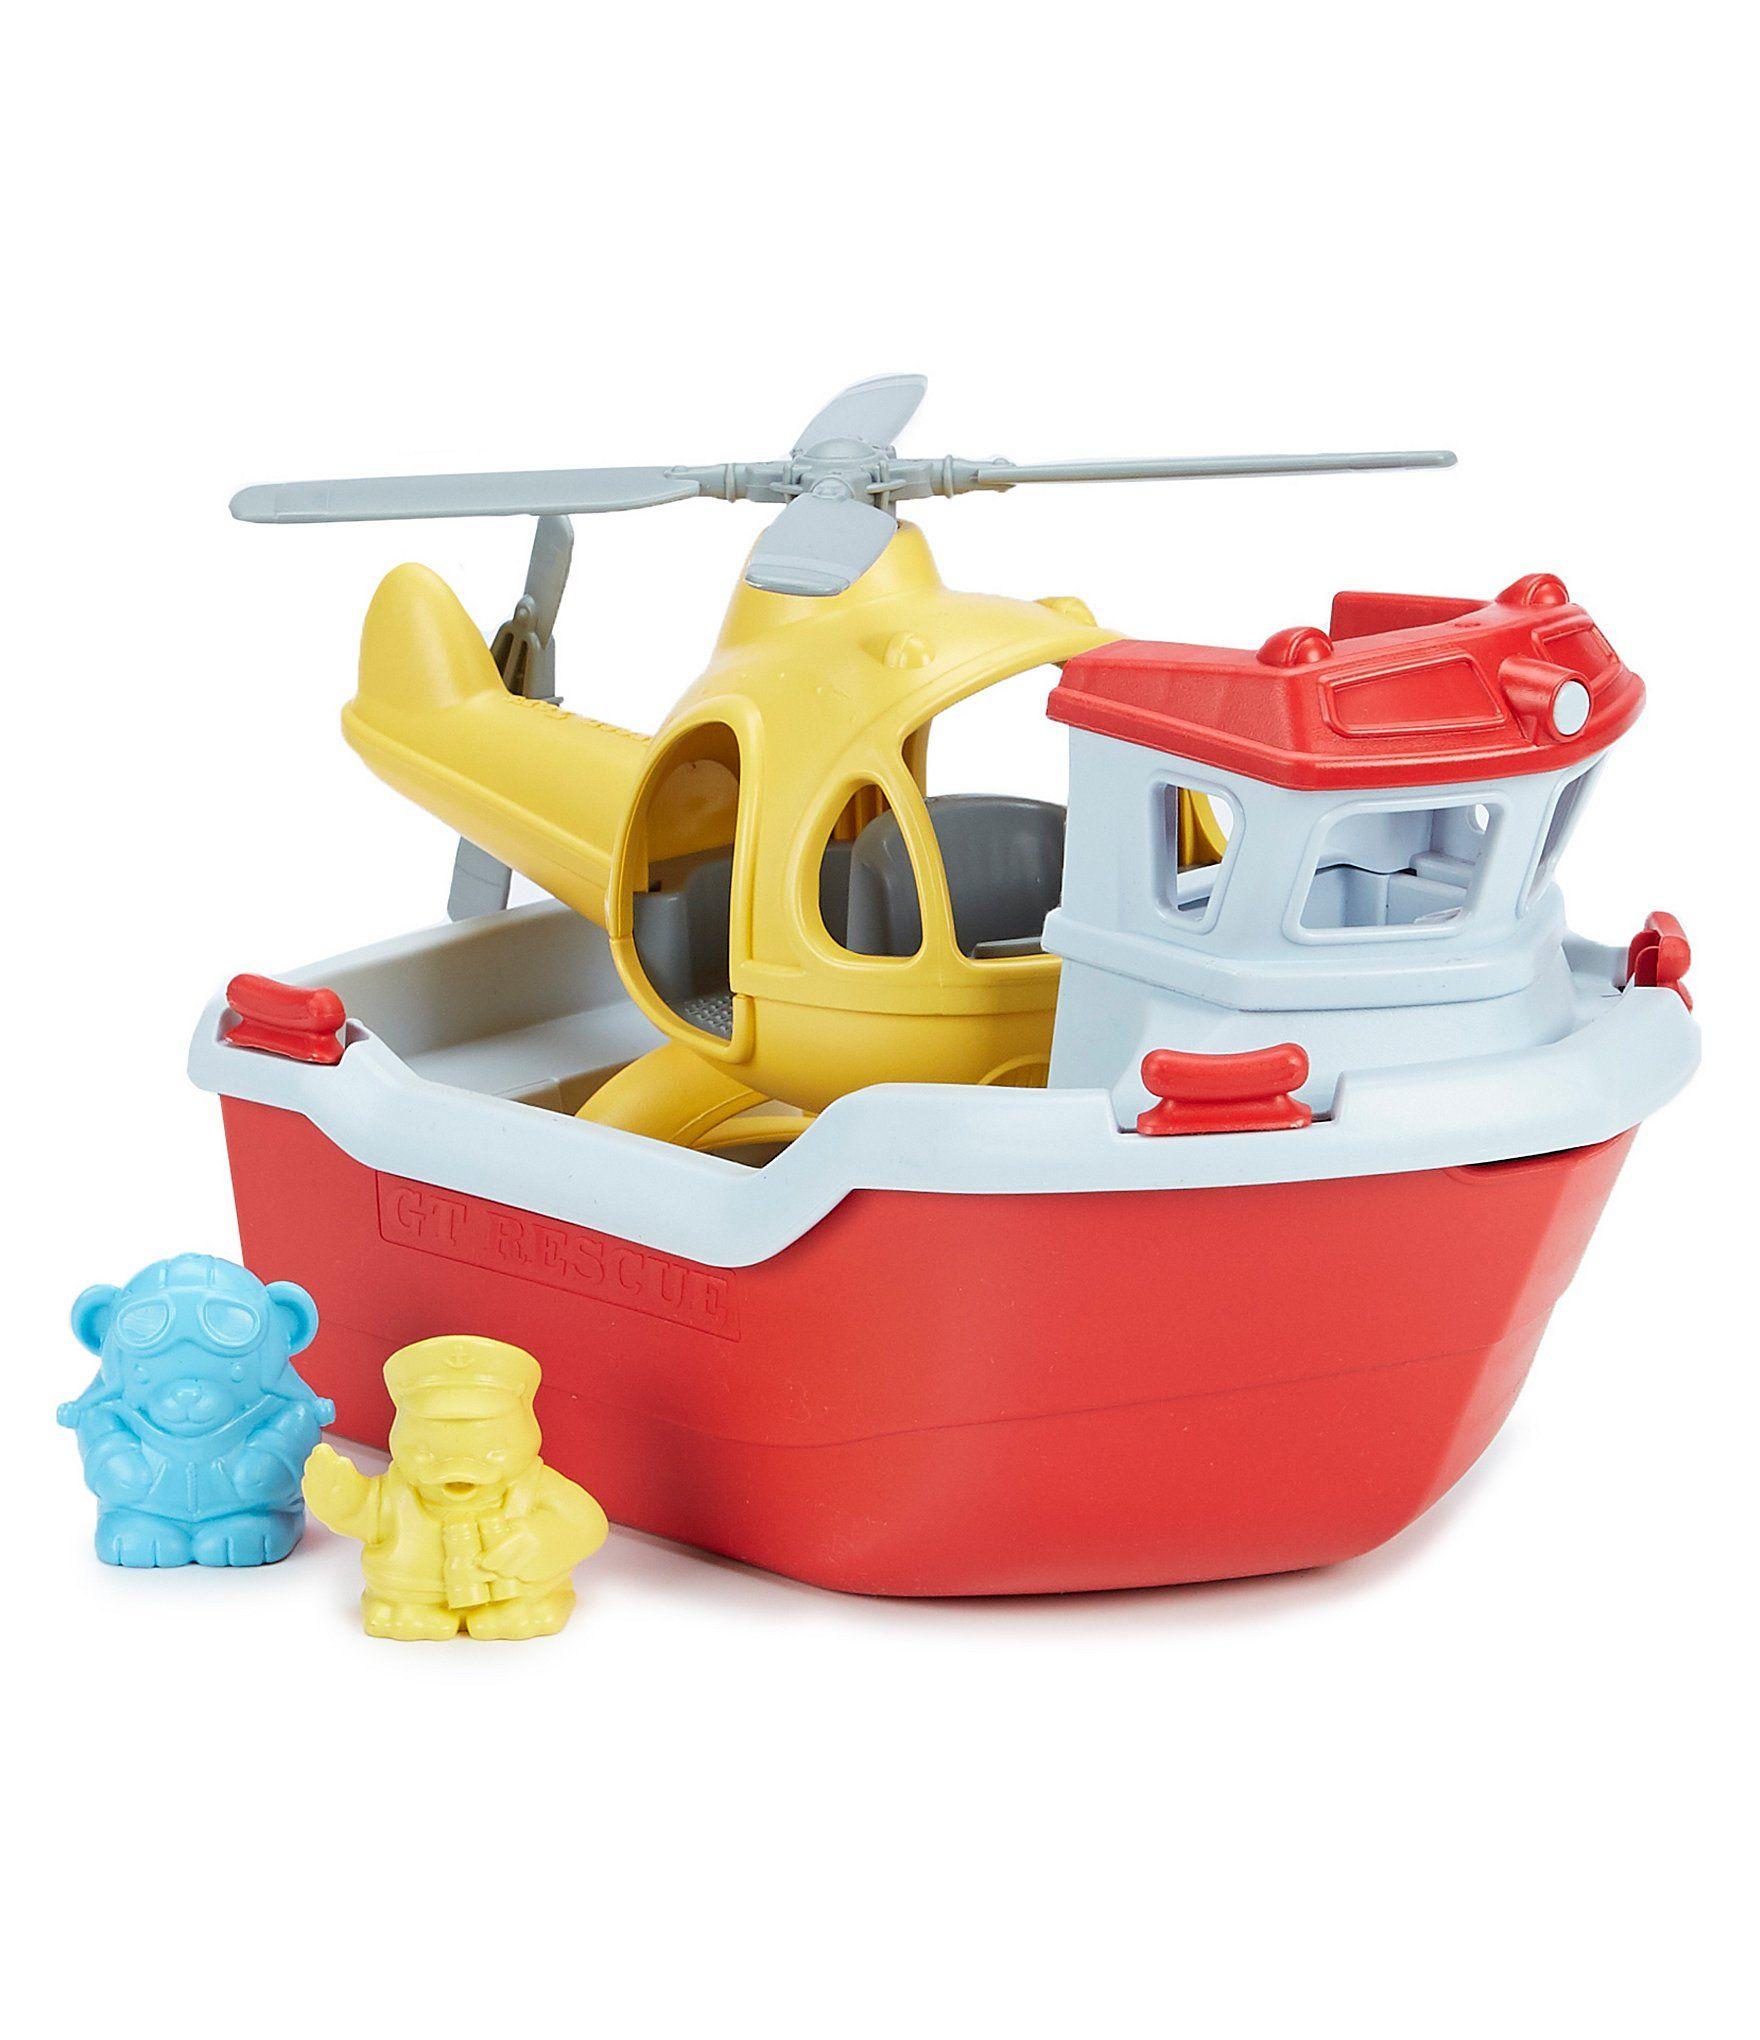 Rettungsboot mit Hubschrauber Rescue Boat and Helicopter von GreenToys 66094B 